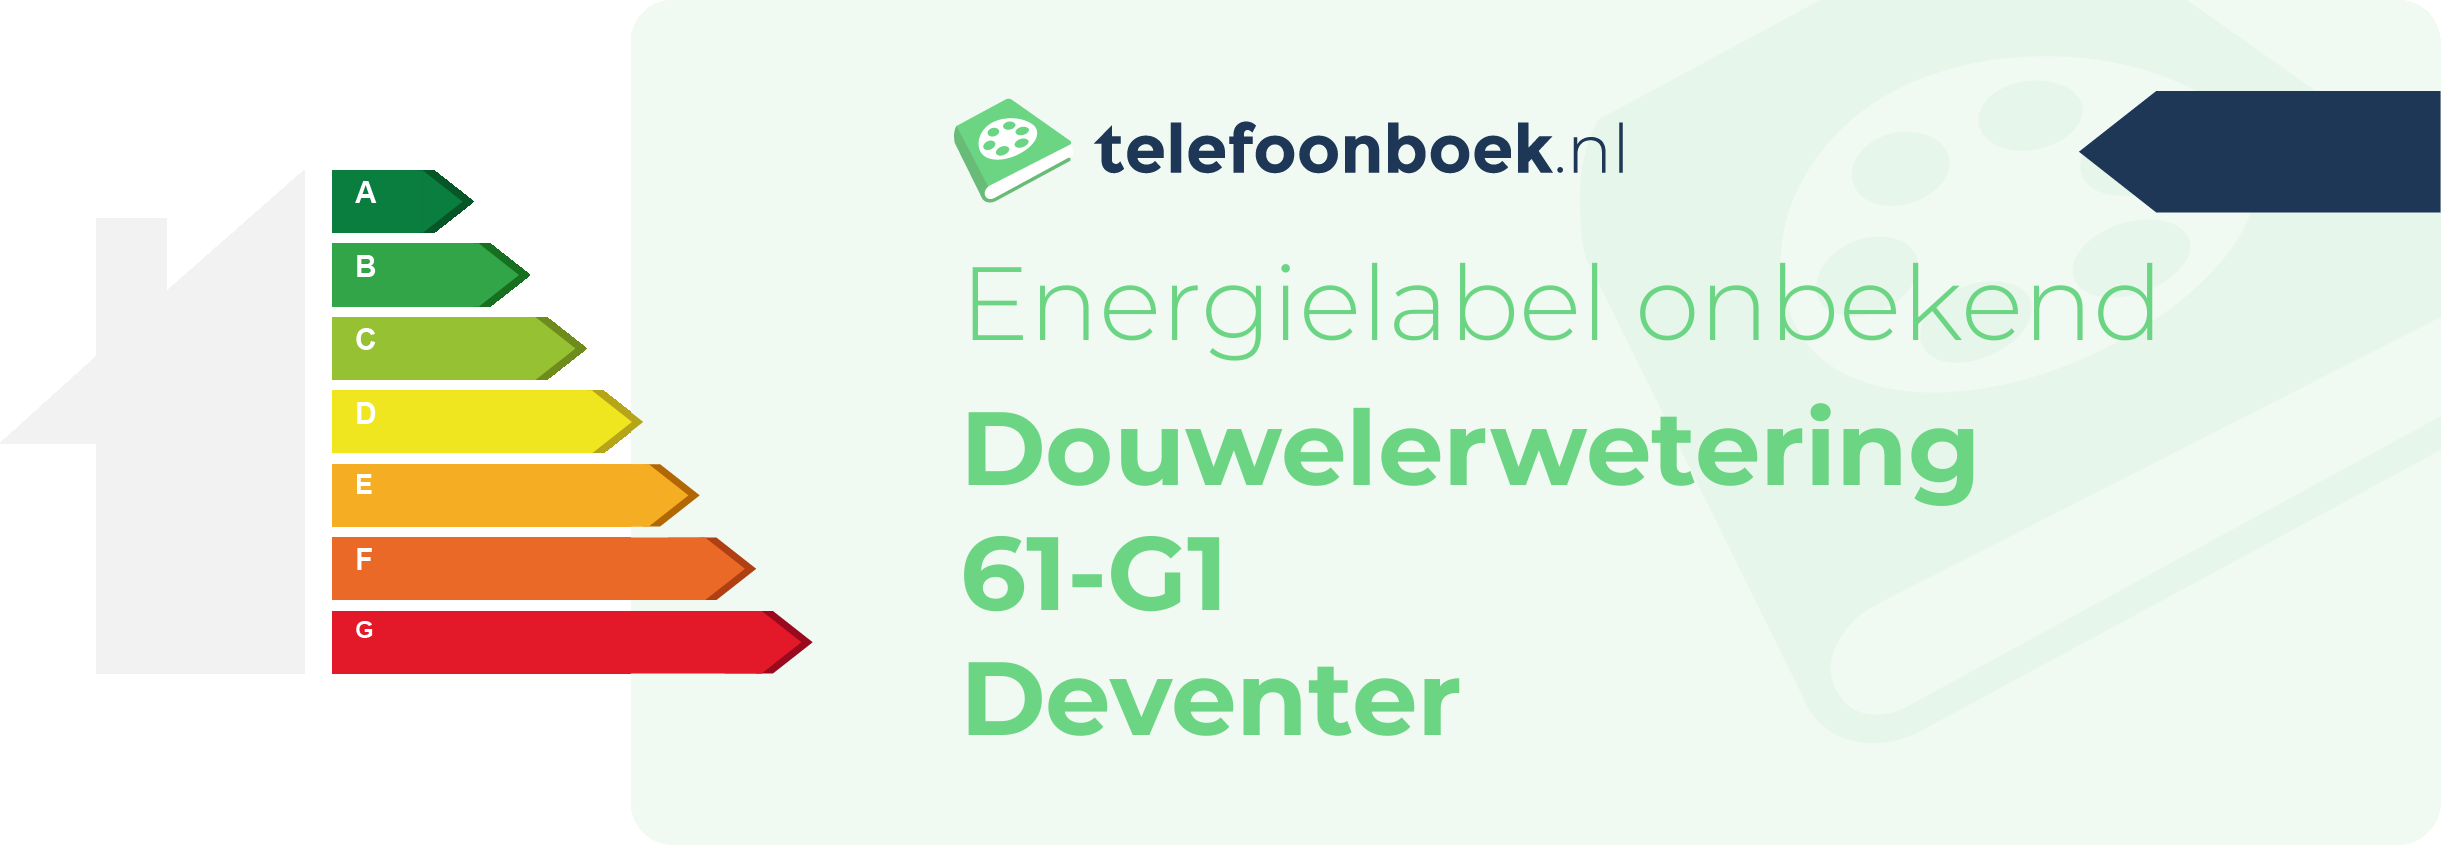 Energielabel Douwelerwetering 61-G1 Deventer